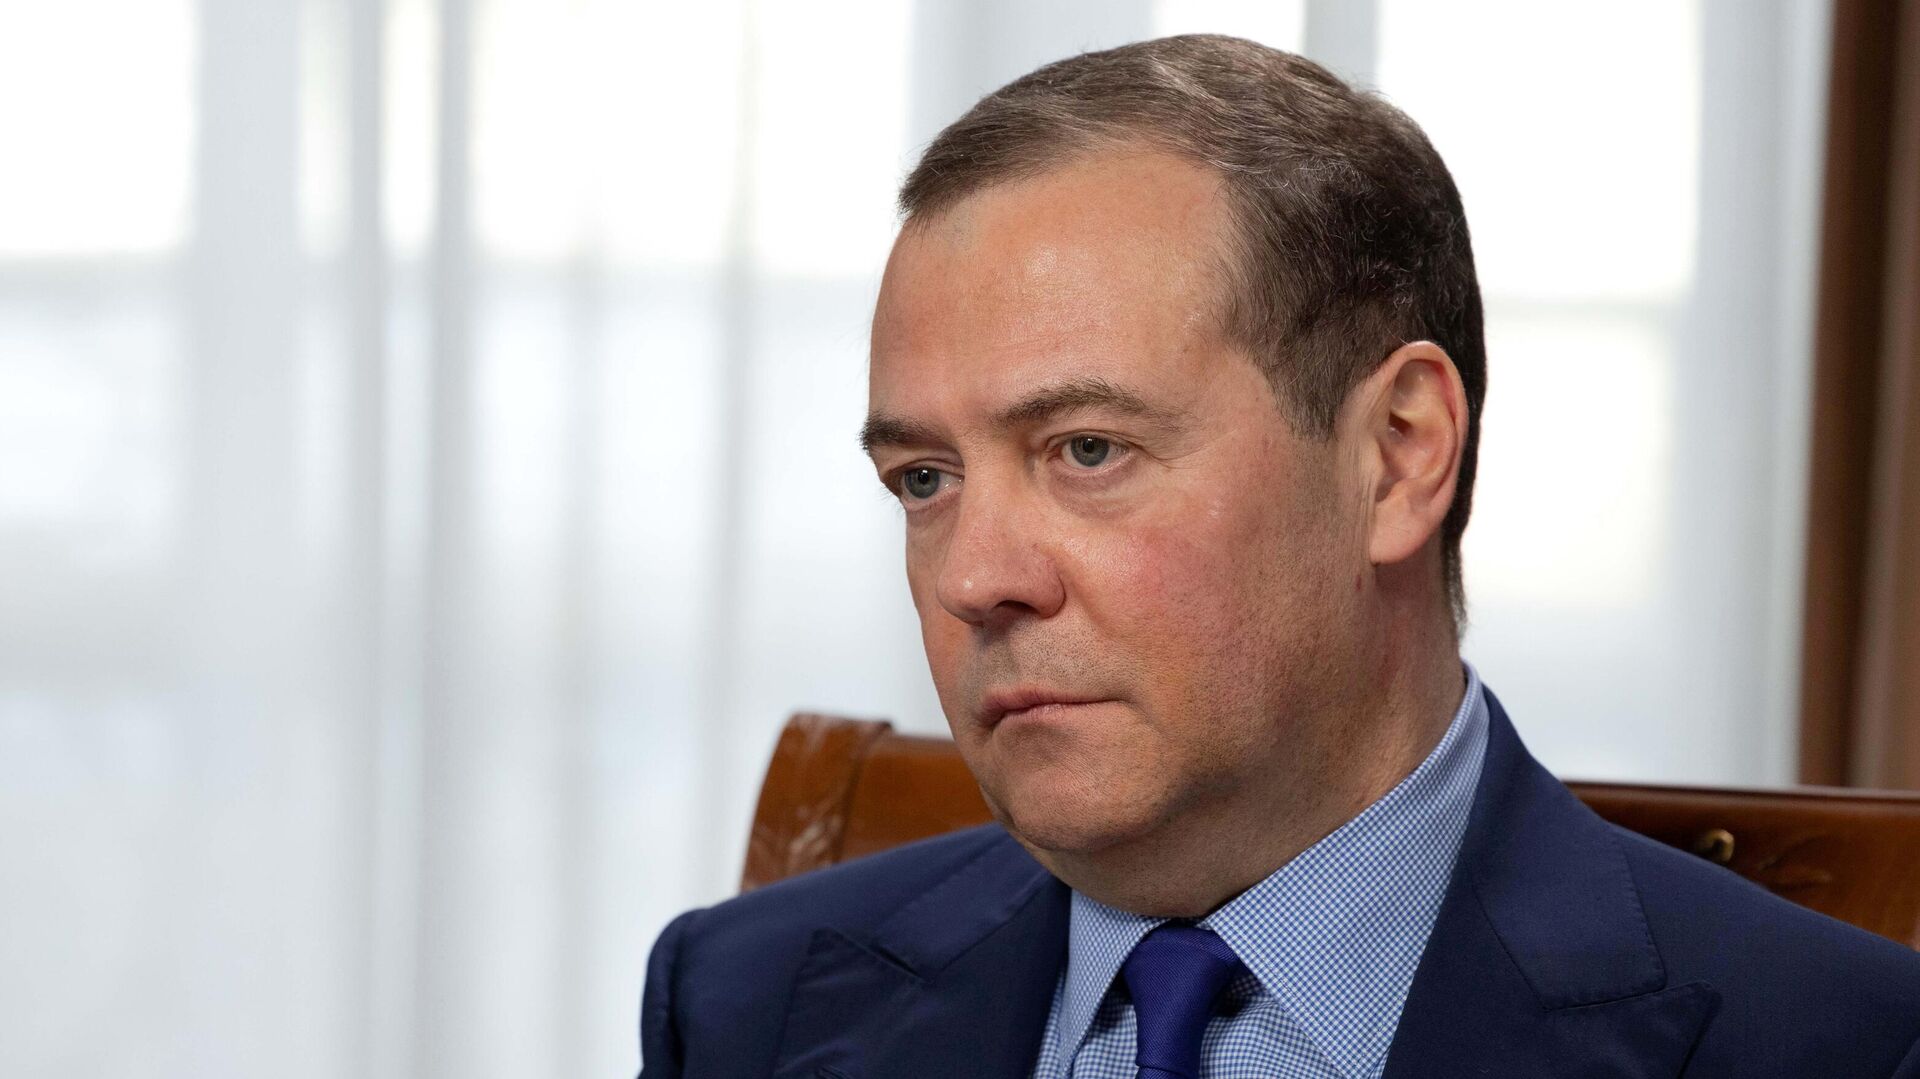 Заместитель председателя Совбеза РФ Д. Медведев дал интервью российским СМИ - Sputnik Азербайджан, 1920, 03.05.2022